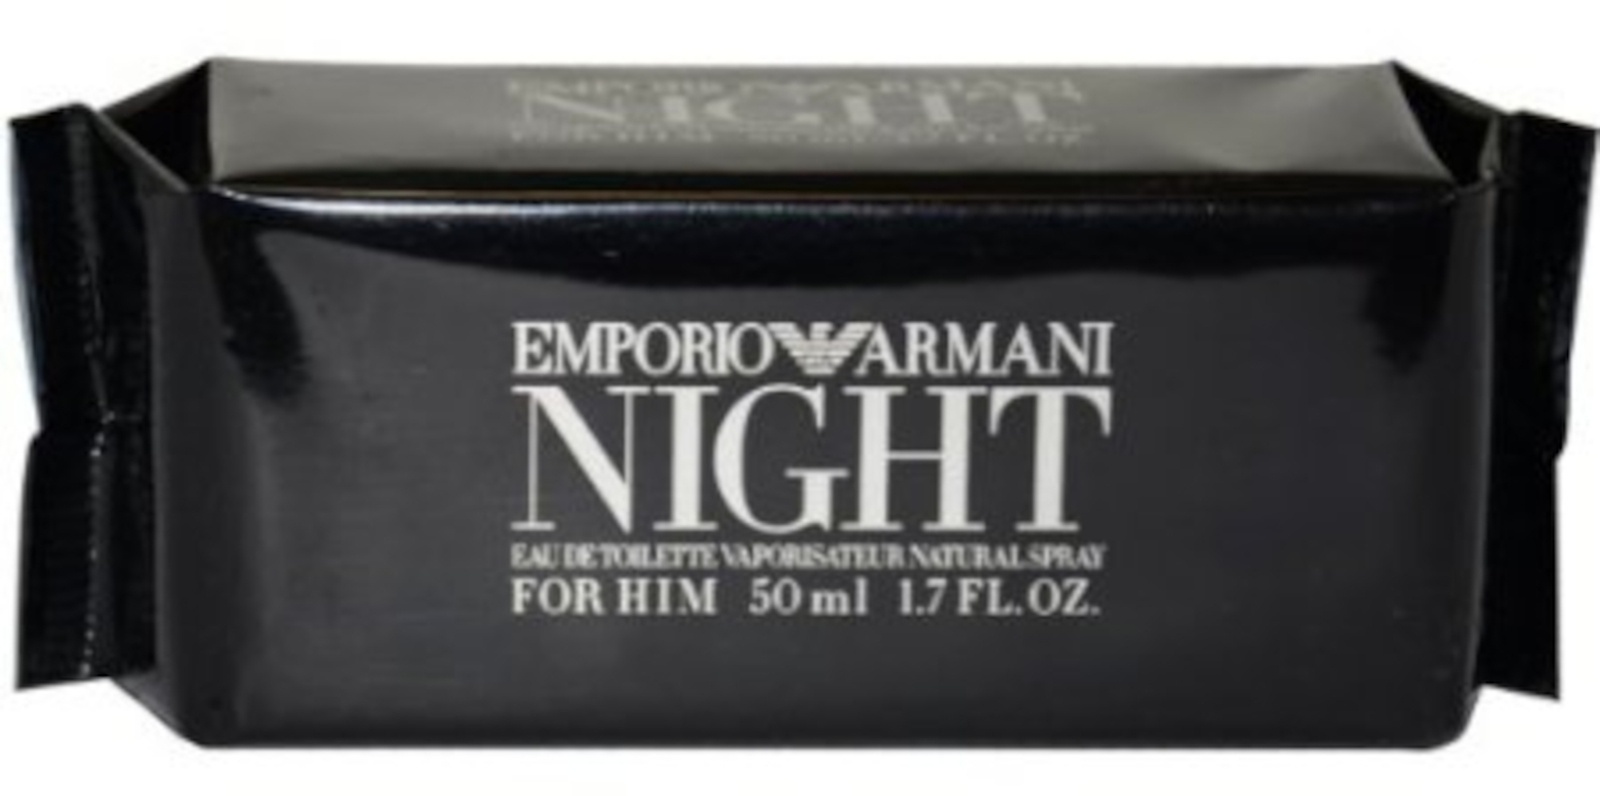 Giorgio Armani Emporio Armani Night for Him 50ml Eau de Toilette